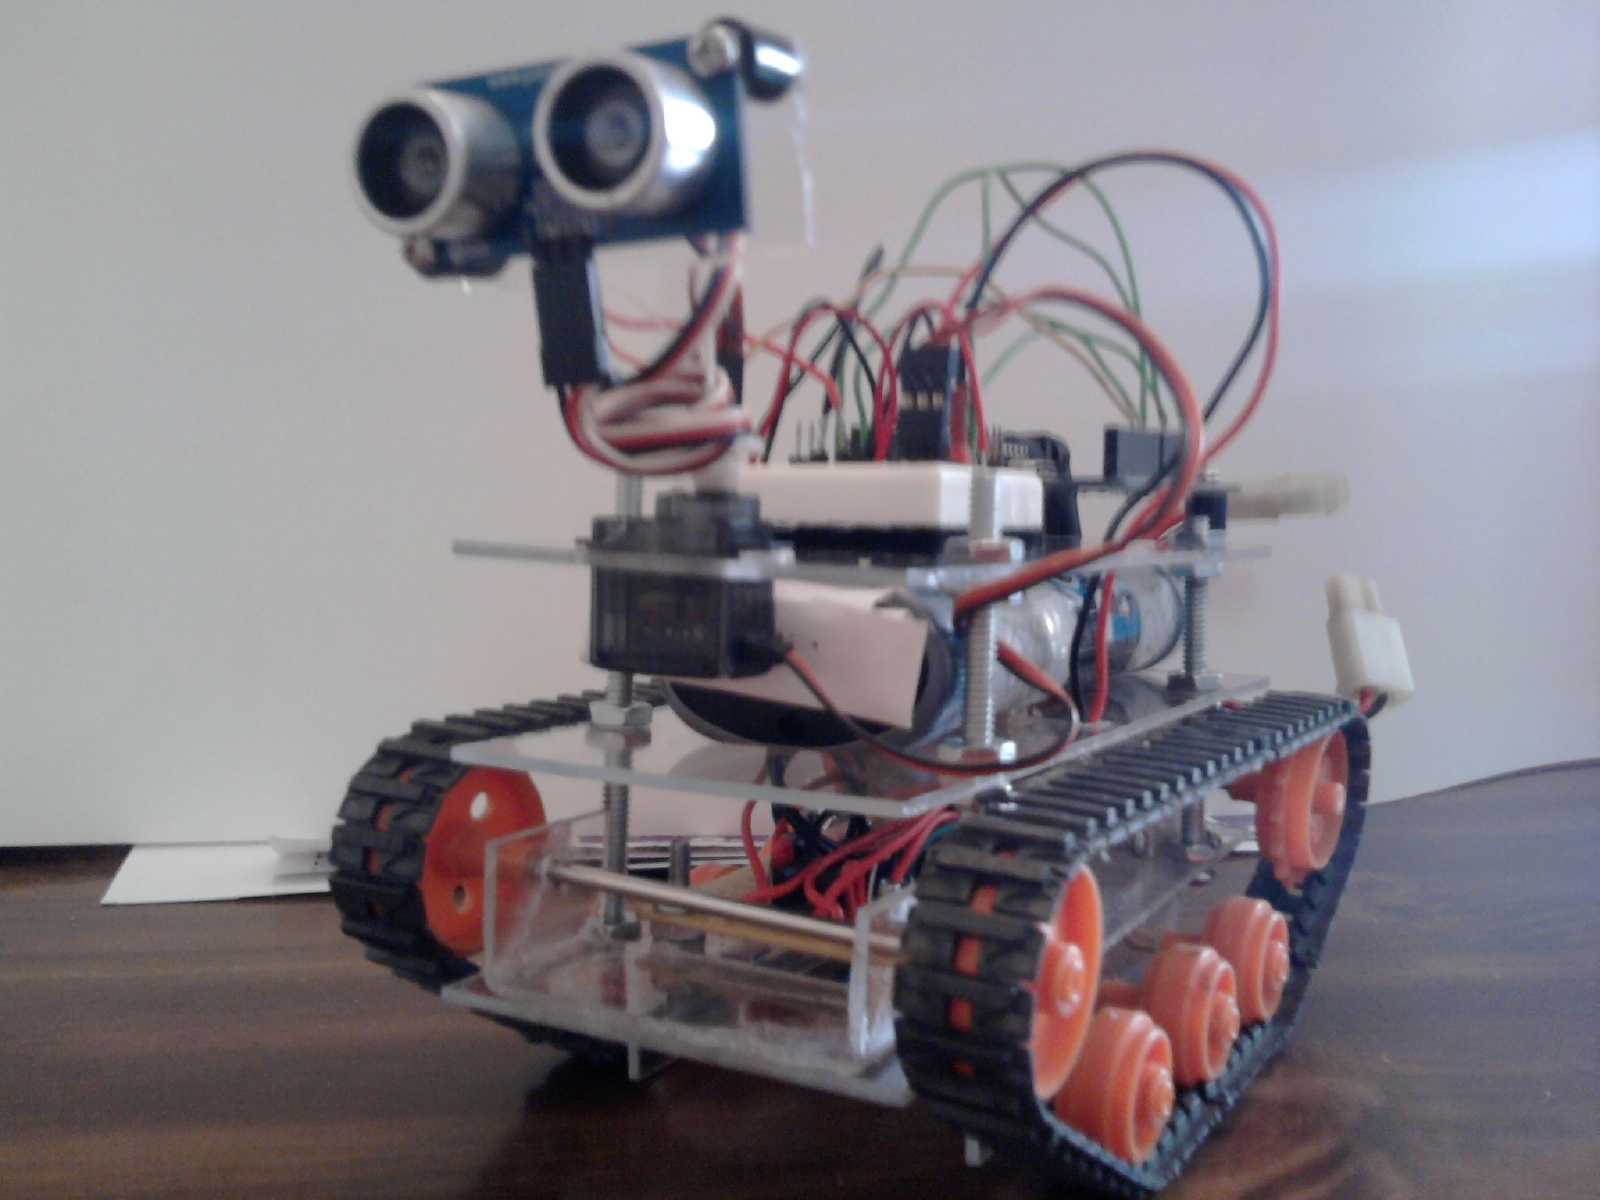 Robot project. Робот Tank ардуино. Вездеход робот ардуино. Робот на Arduino Mega 1280. Танк на ардуино нано.